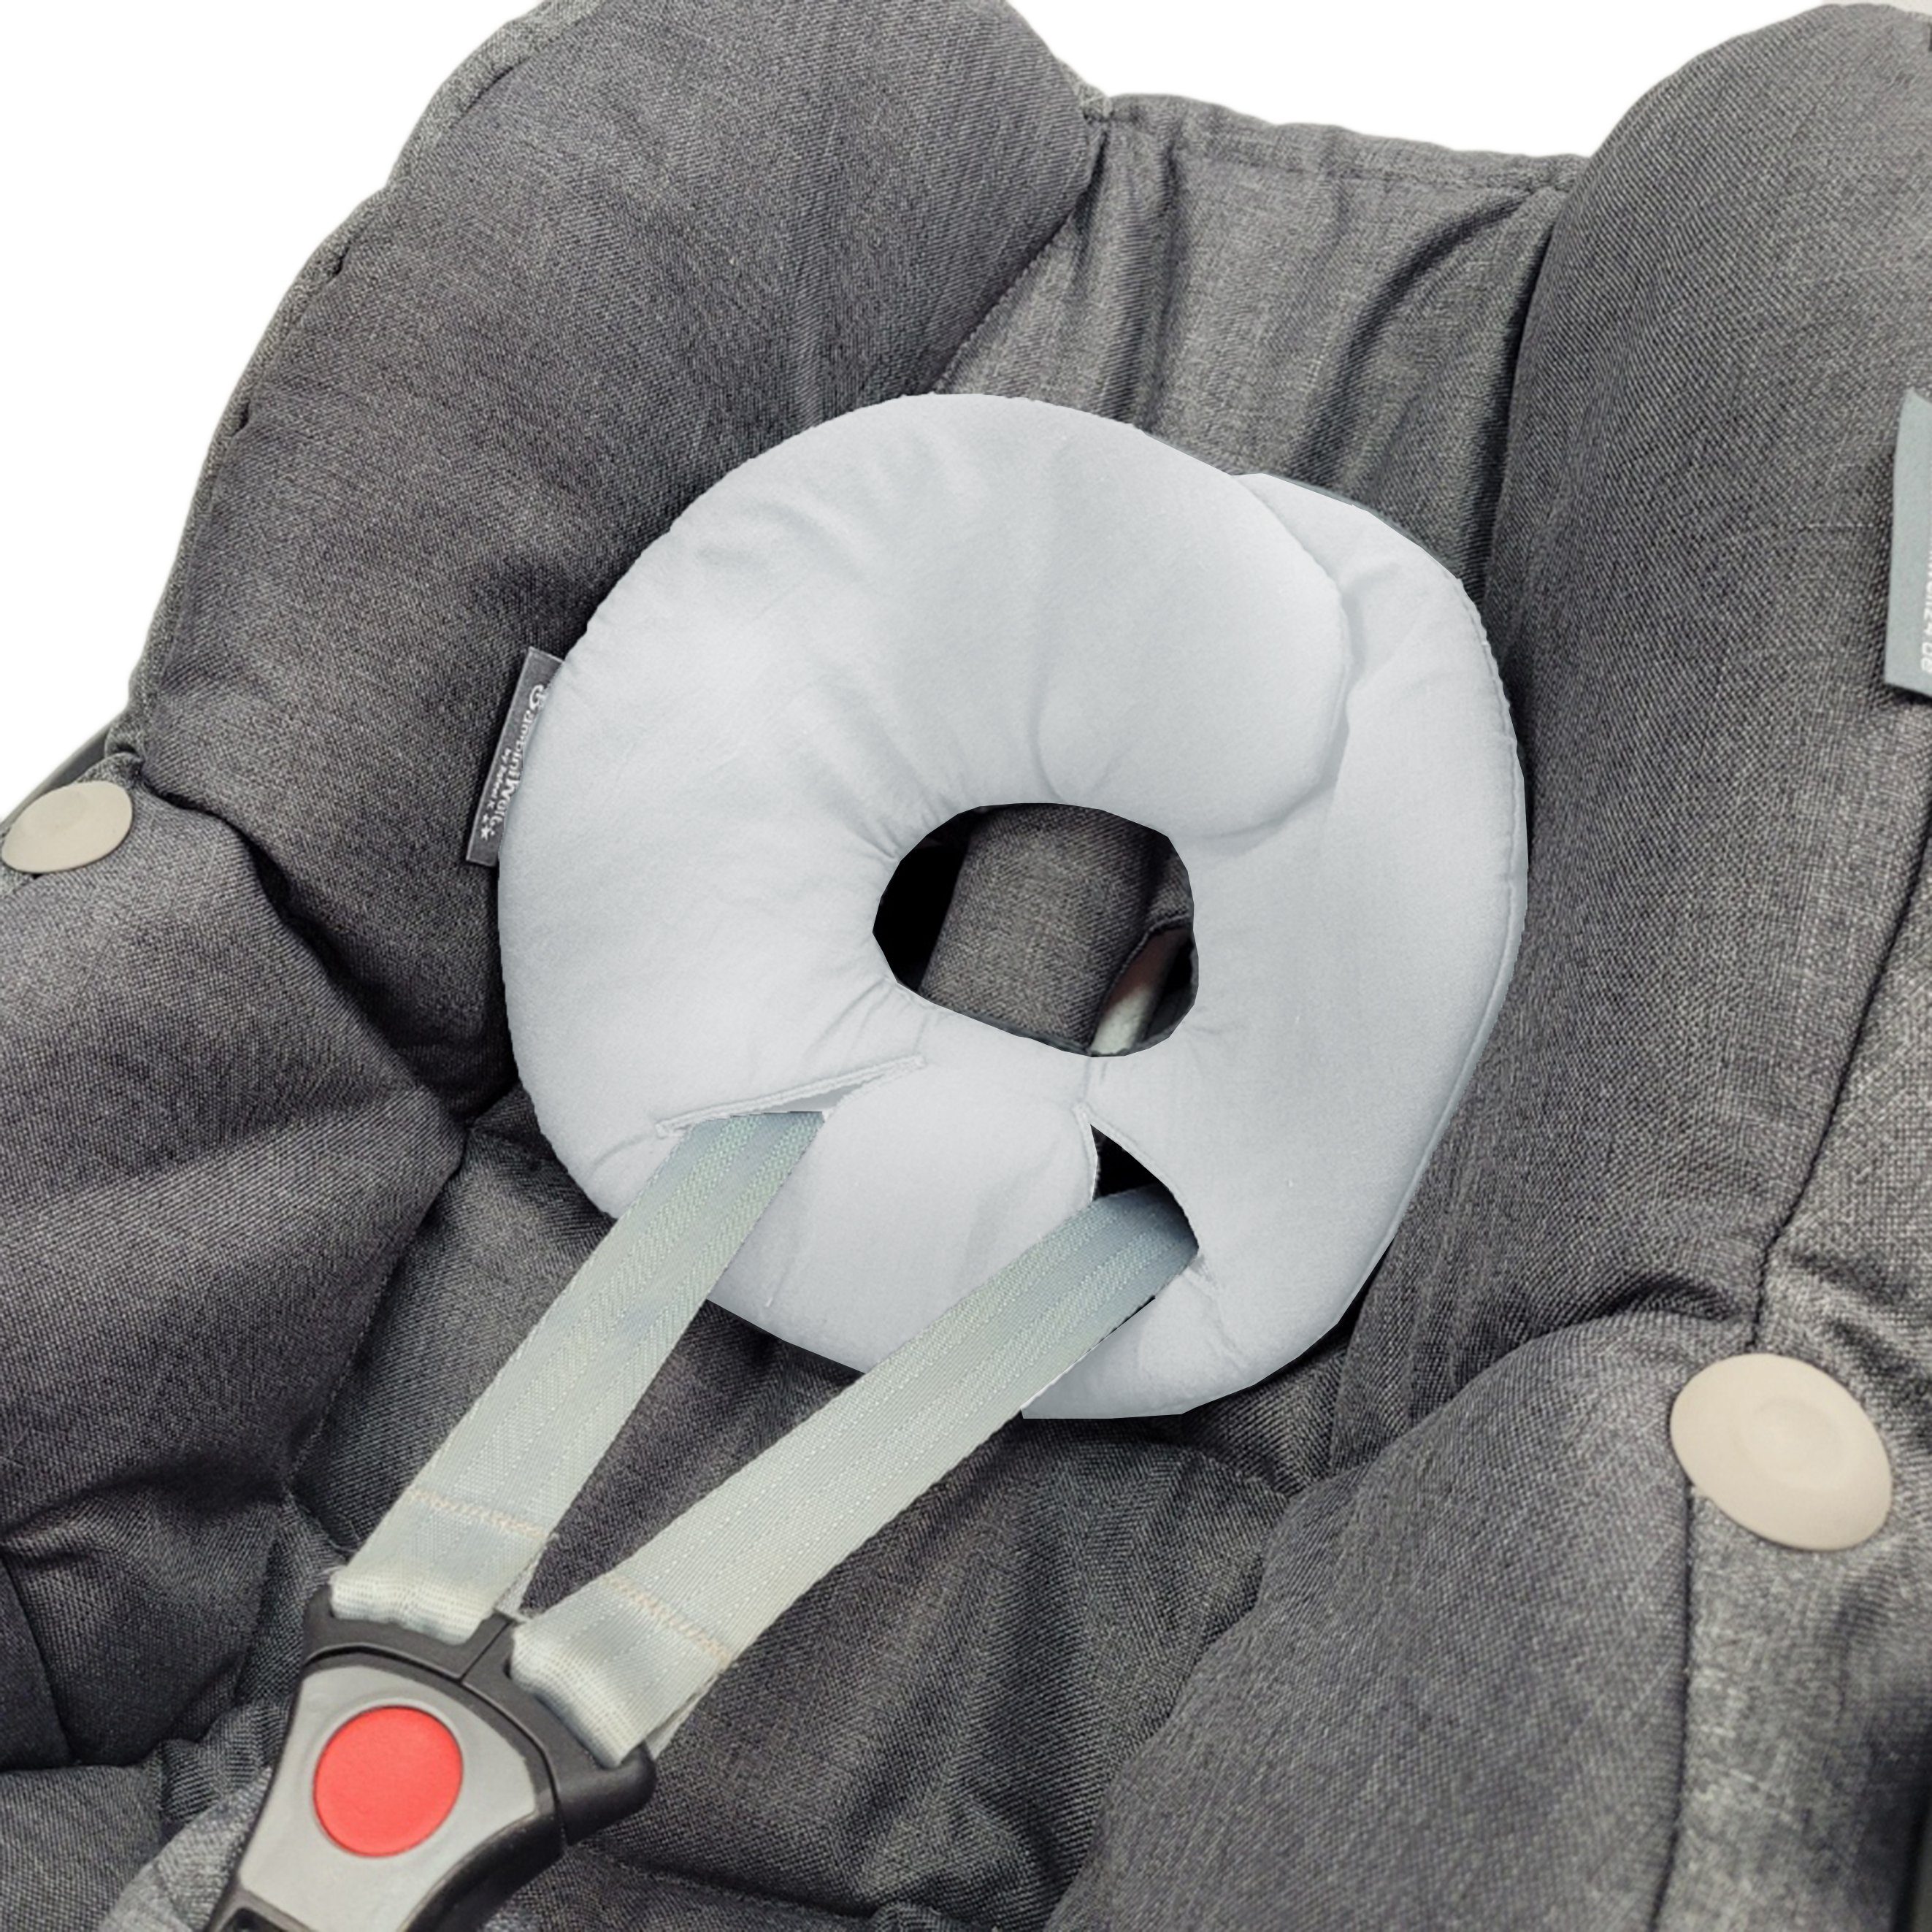 BambiniWelt by Rafael K. Babyschale Kopfpolster für Babyschale kompatibel mit Maxi-Cosi Pebble/Pebble Plus, ab: Geburt, bis: bis ca. 14 Monate Baumwolle weiß